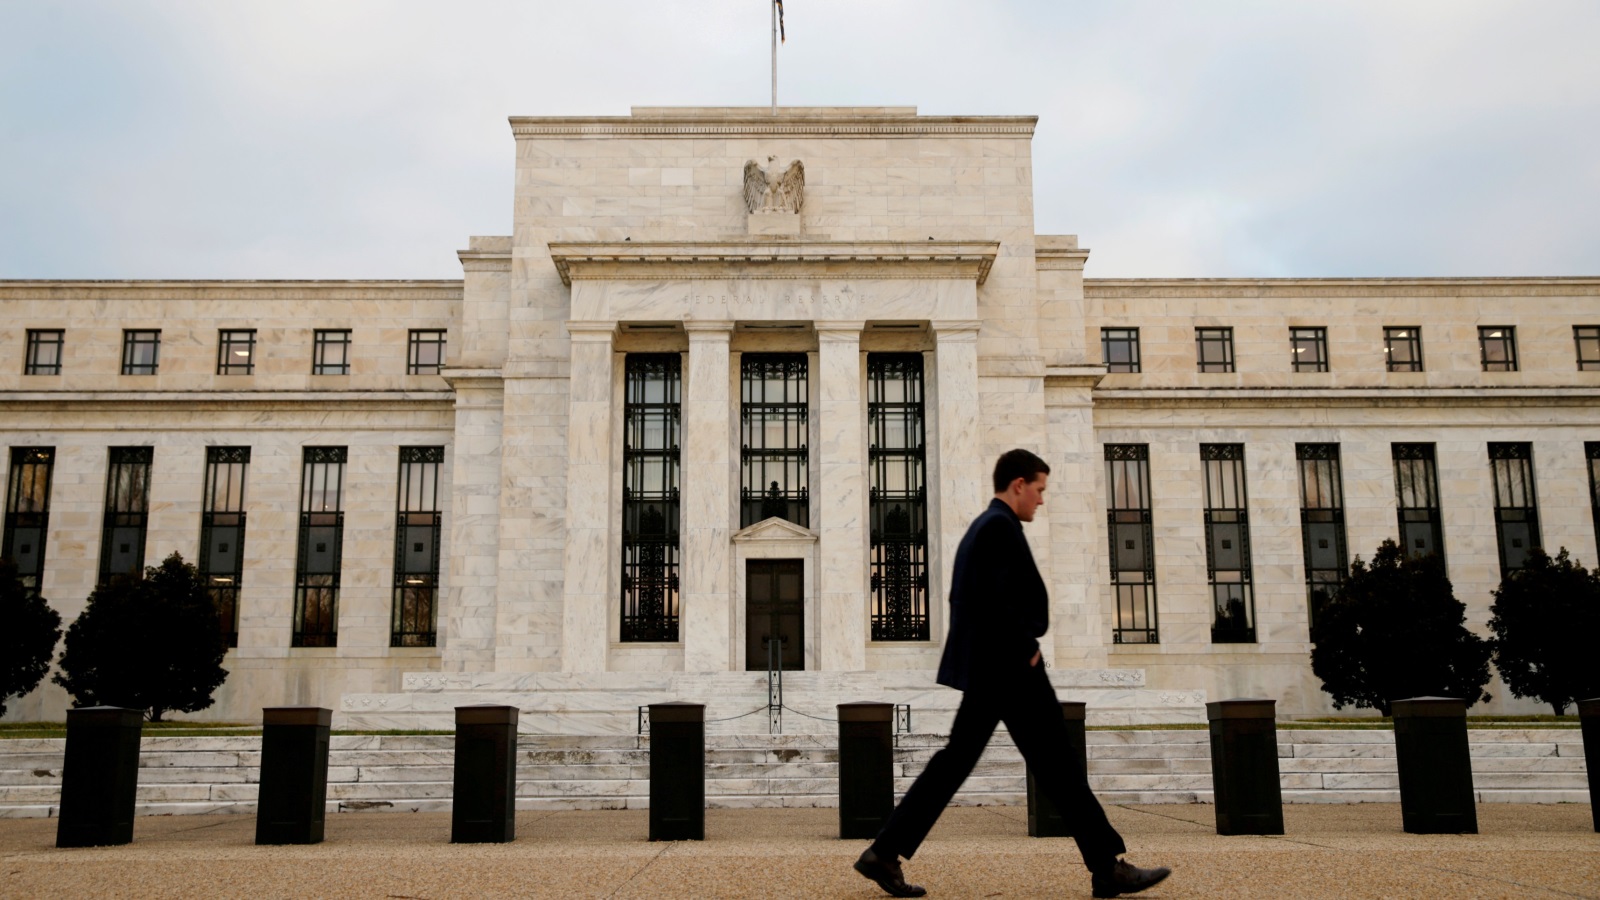  وفق خبراء، تشديد السياسة النقدية من جانب الفدرالي الأميركي سيتسبب في مشاكل عديدة (رويترز)